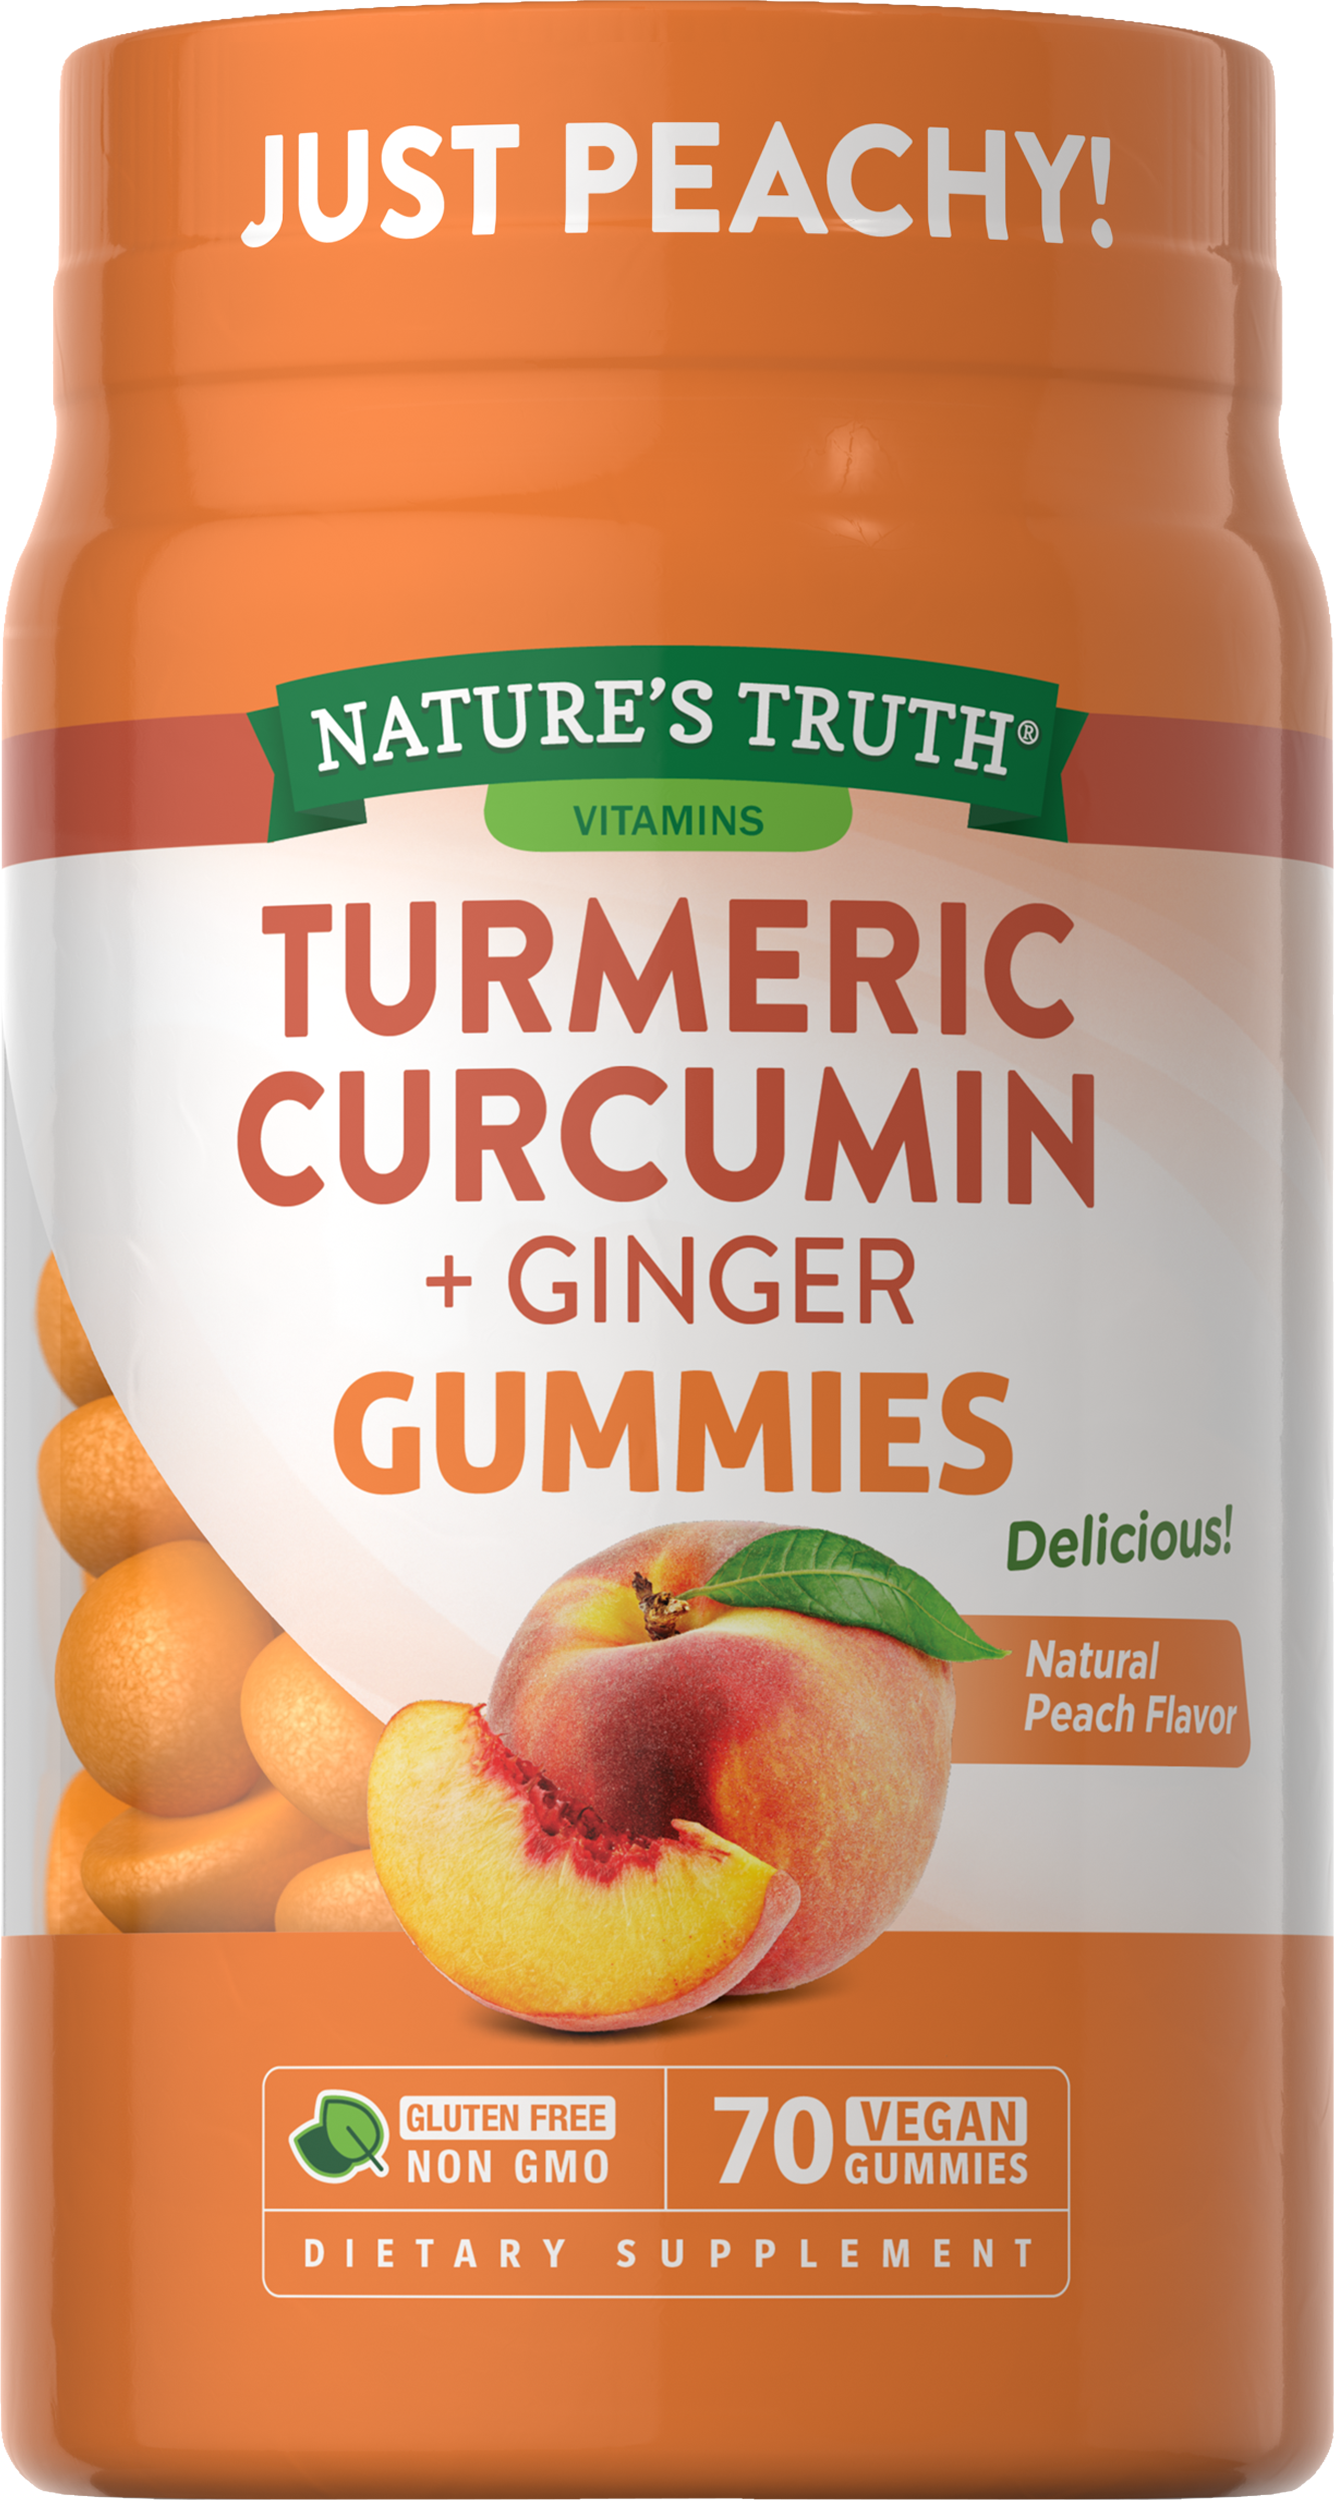 Turmeric Curcumin + Ginger